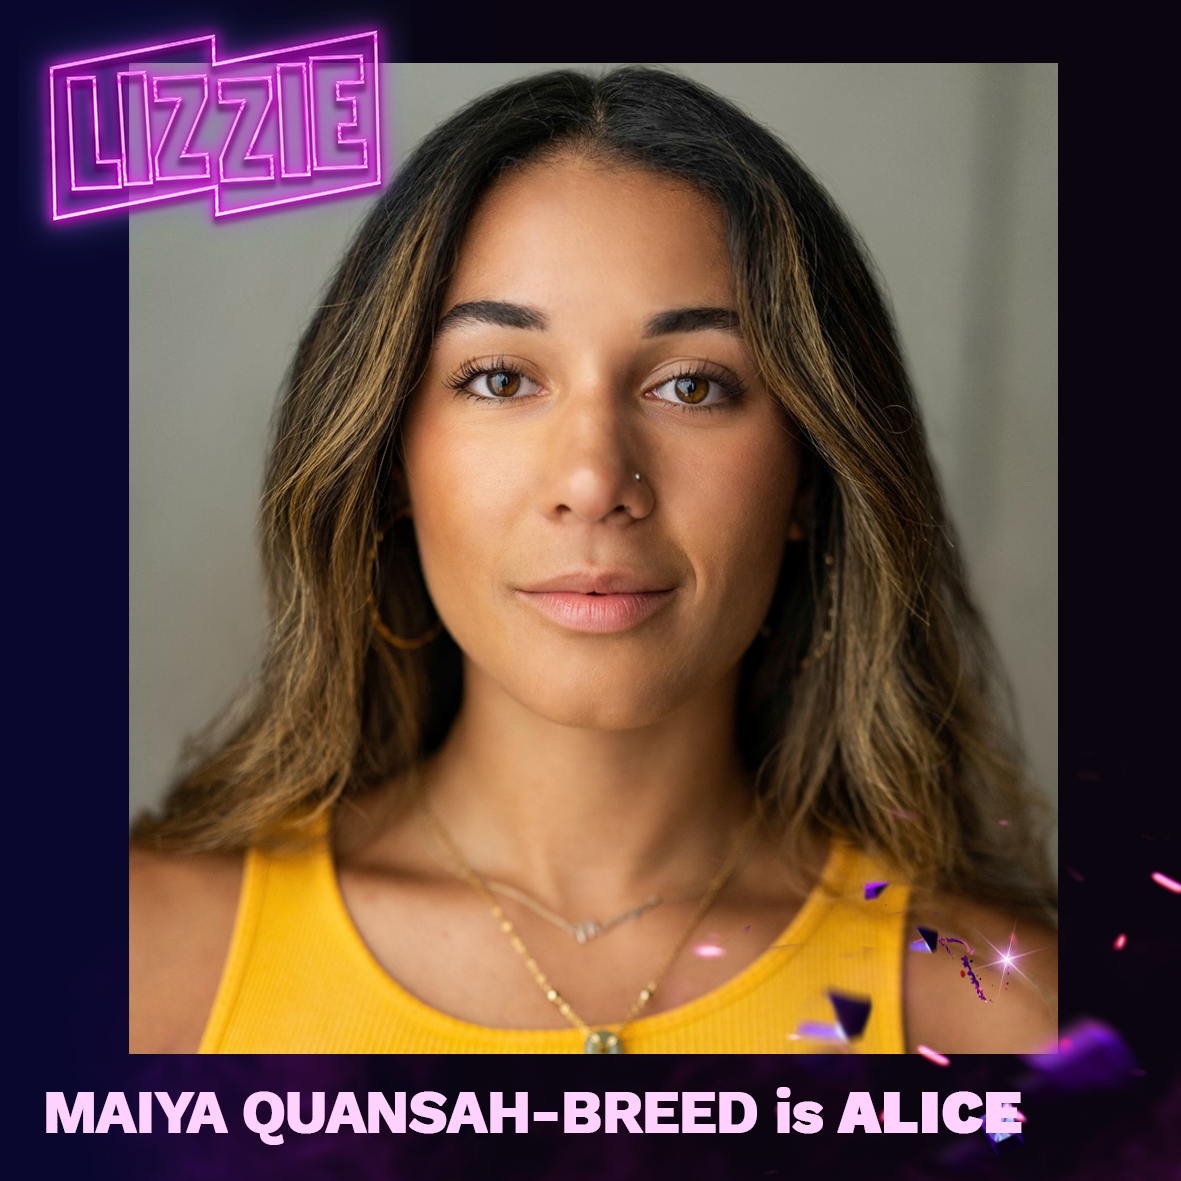 Maiya Quanasha-Breed is Alice